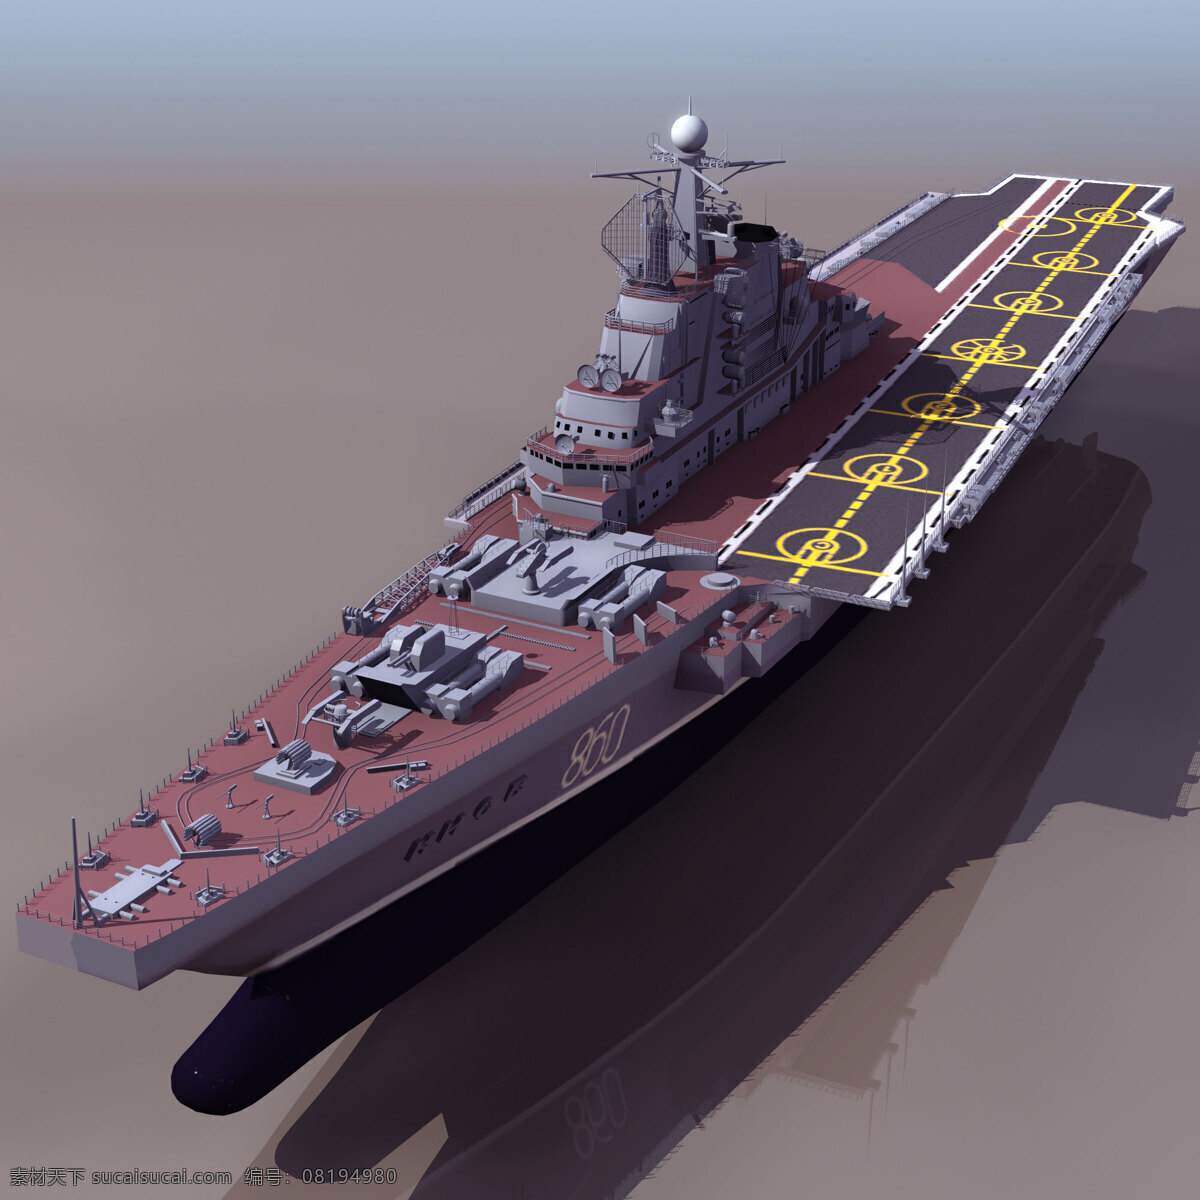 大型战舰01 kneb 军事模型 船模型 海军武器库 3d模型素材 其他3d模型